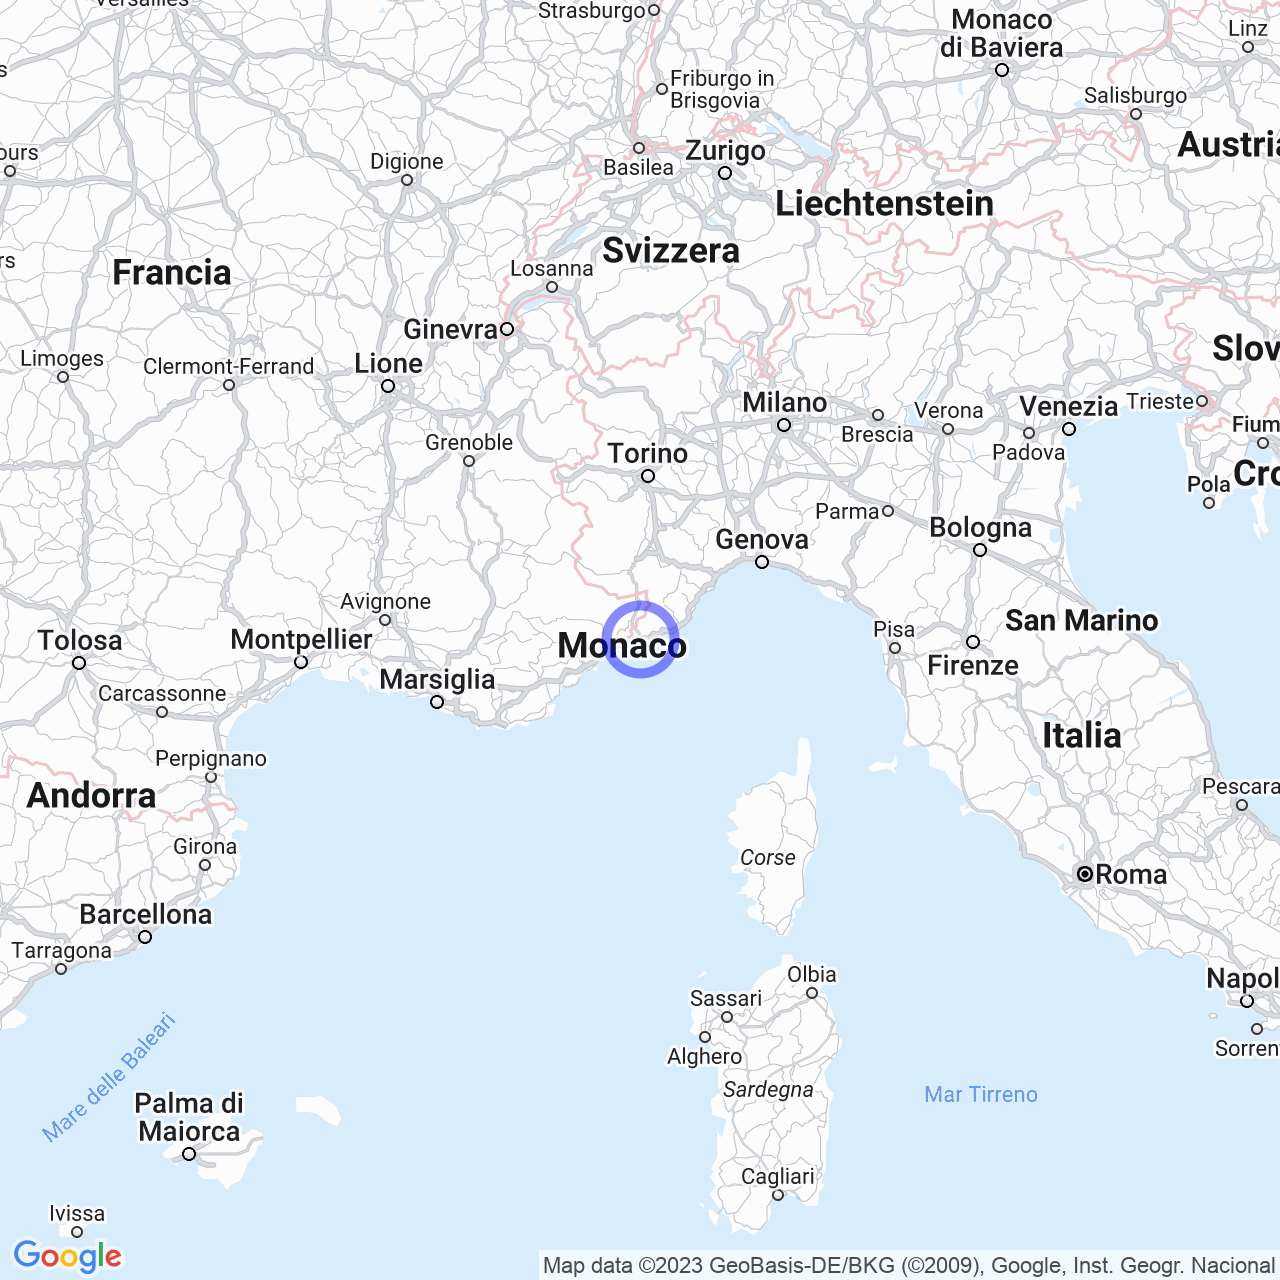 The province of Imperia: treasures of Liguria.